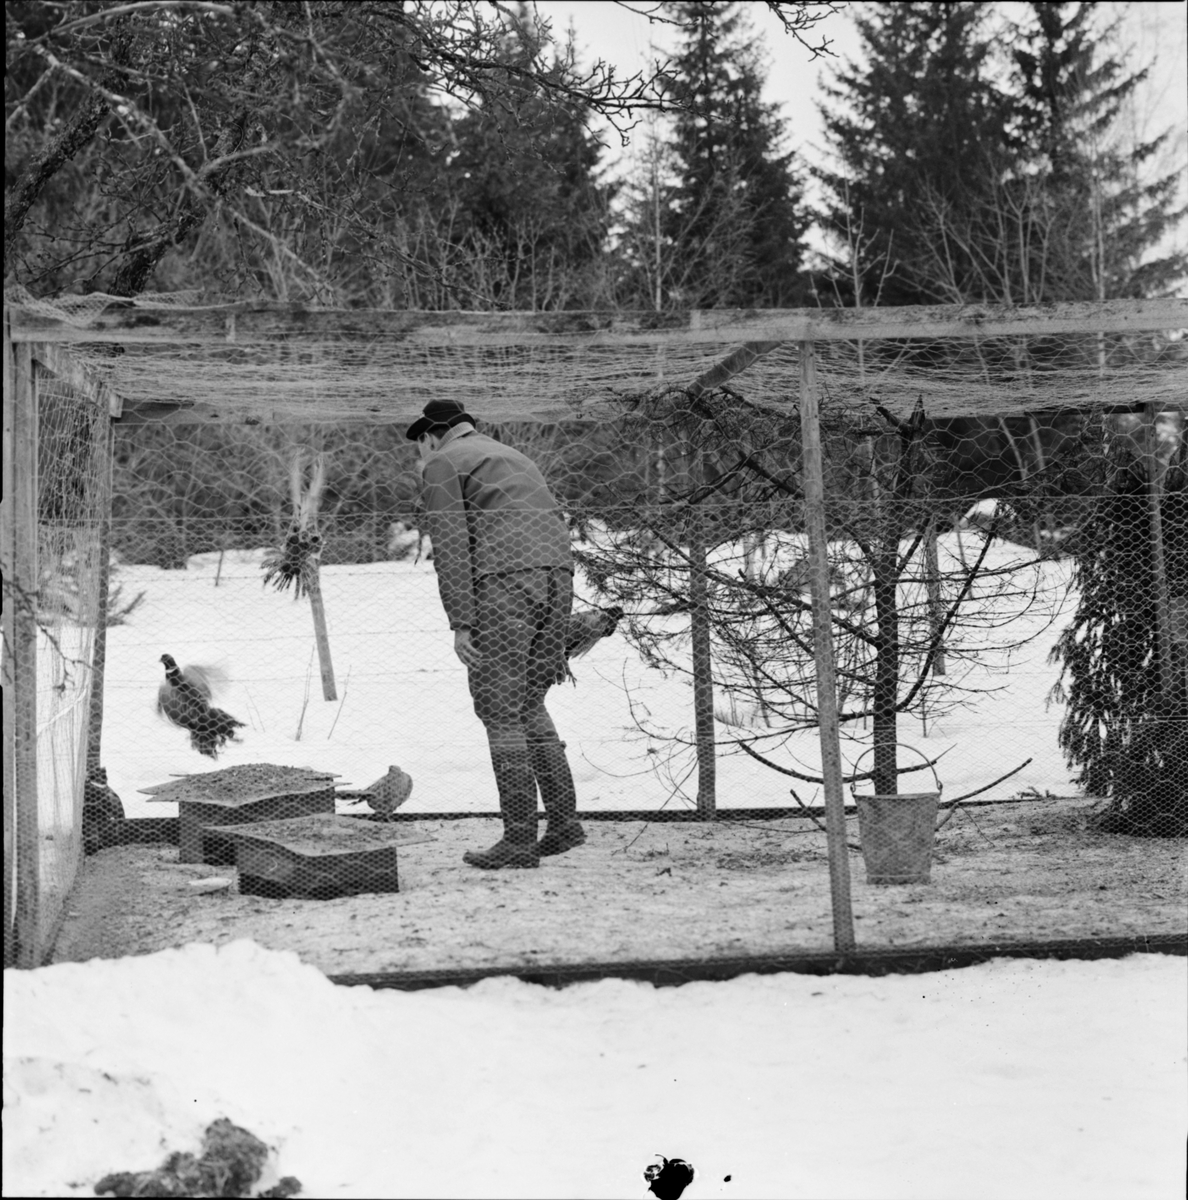 "Japanska fasaner i viltvårdsodling", Skuttunge, Uppland 1961